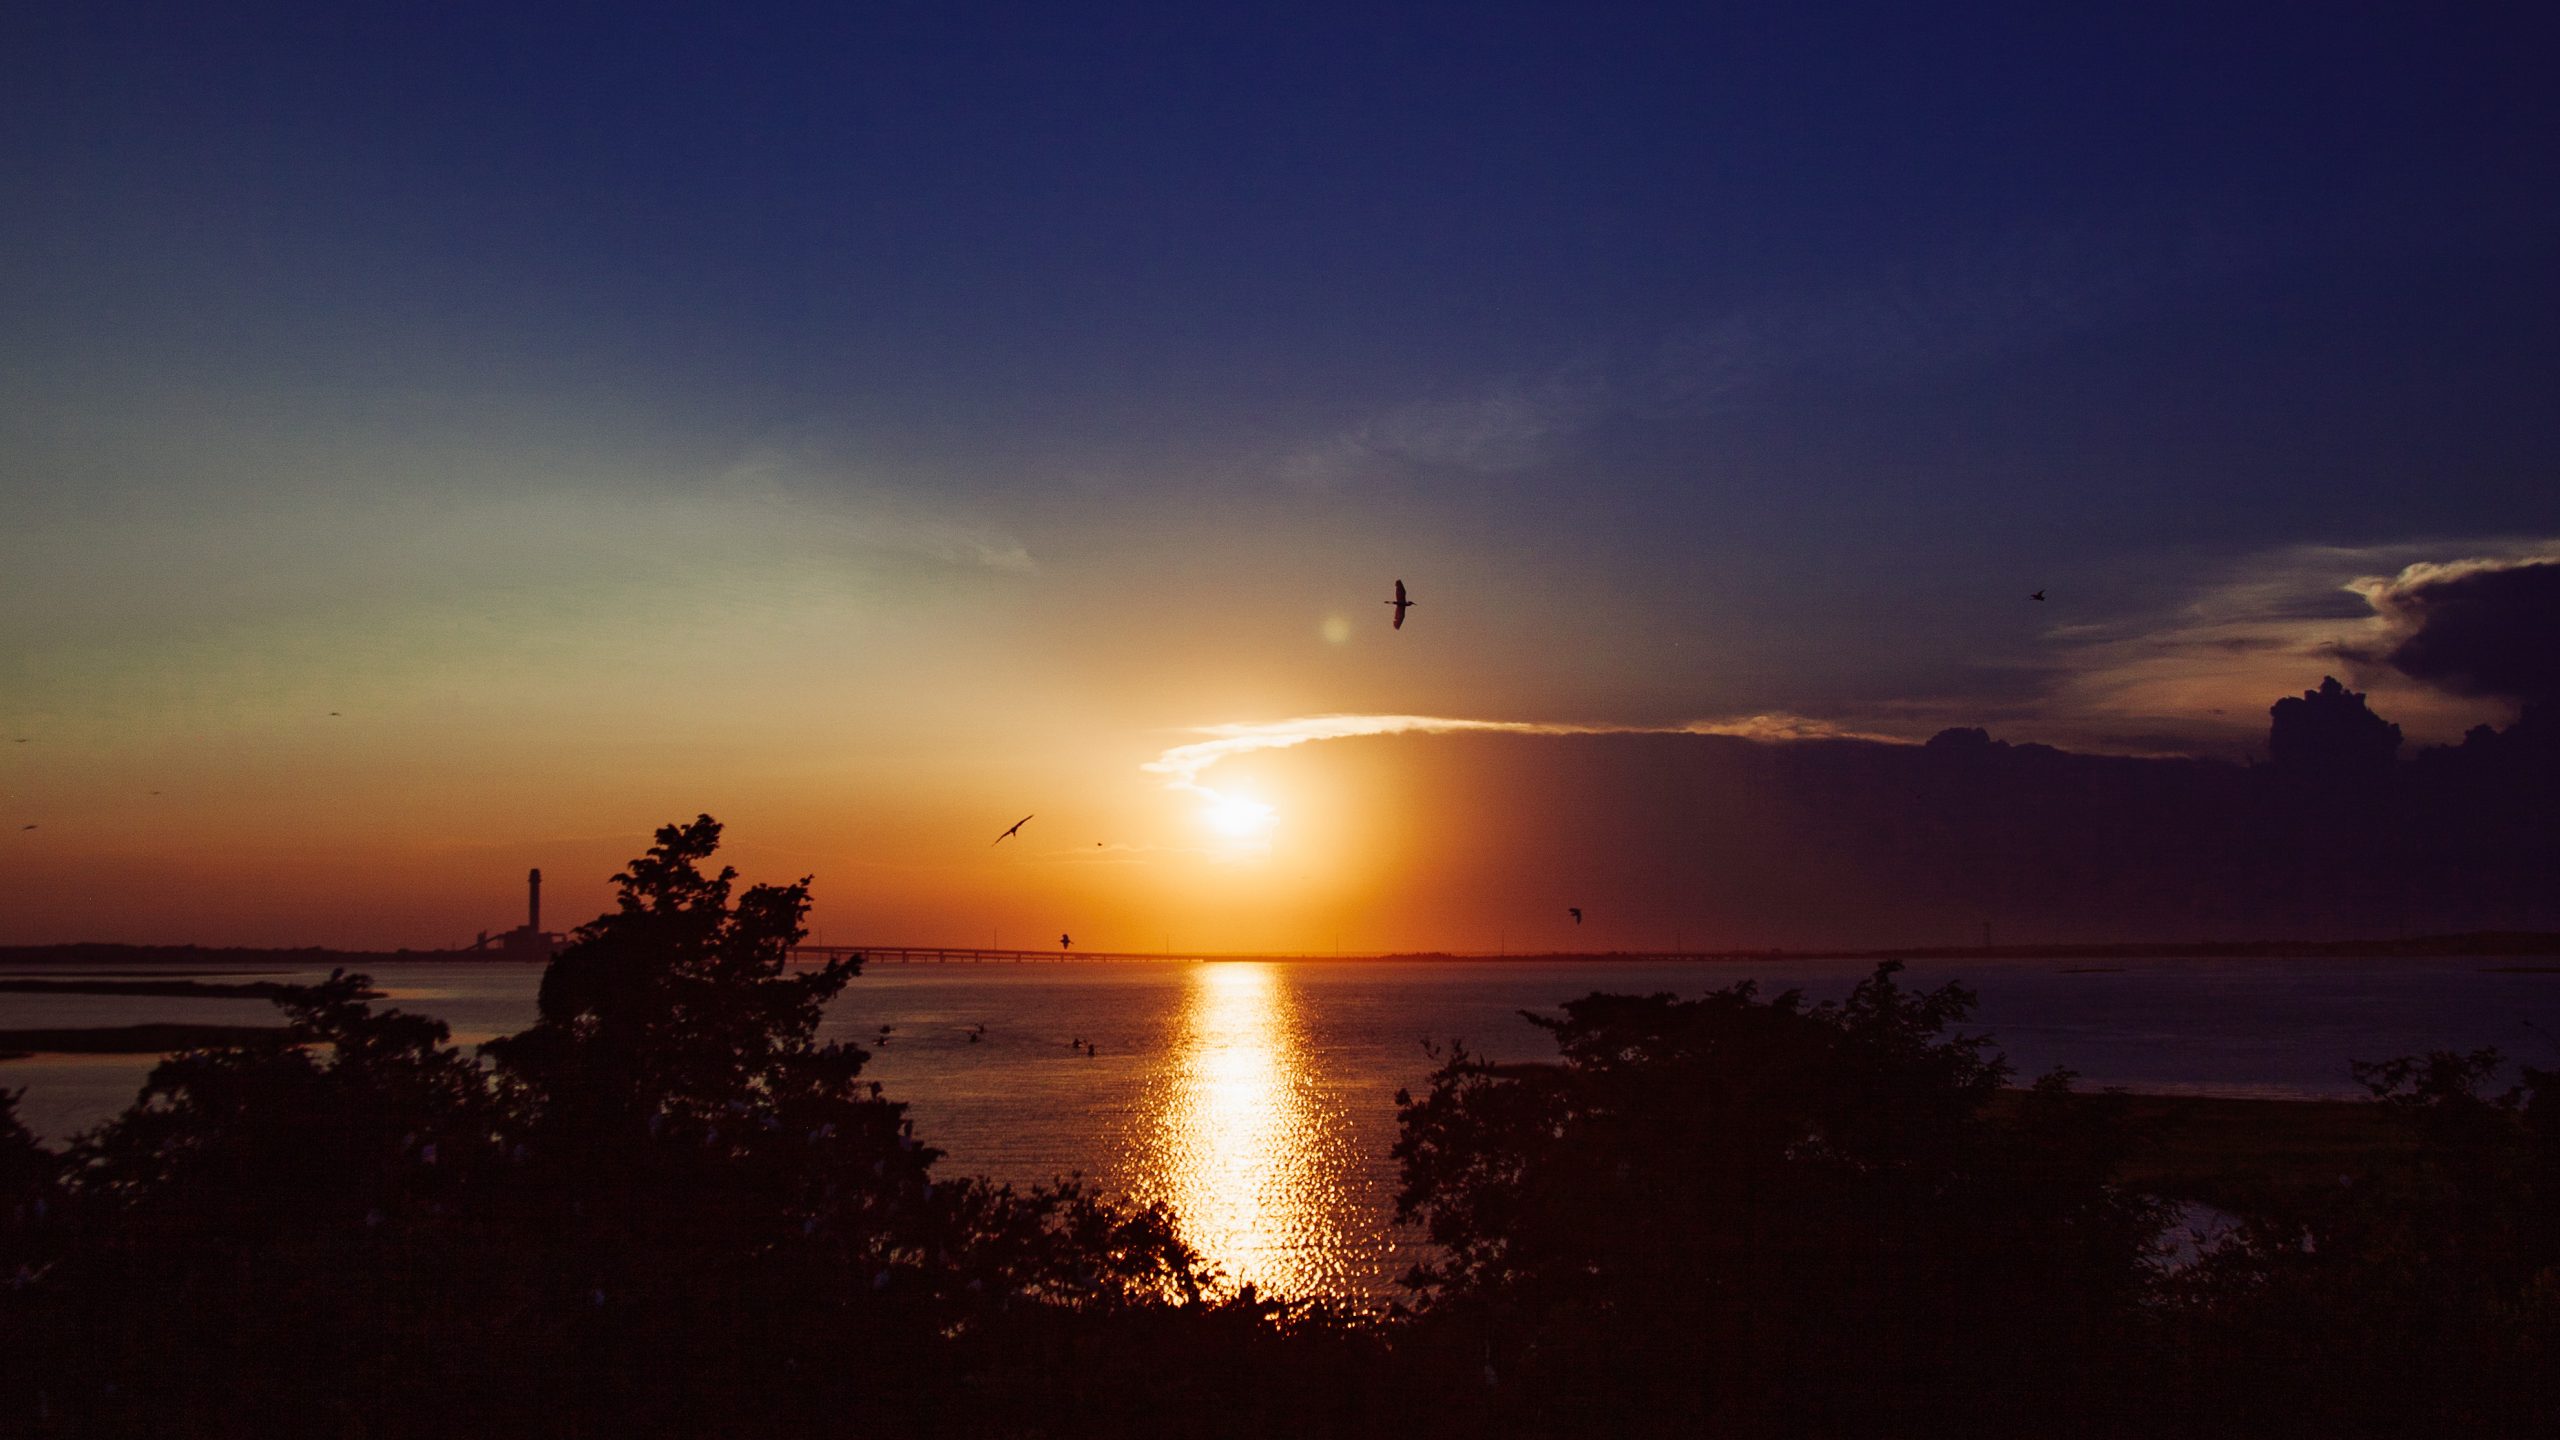 Sunset over Egg Harbor Bay